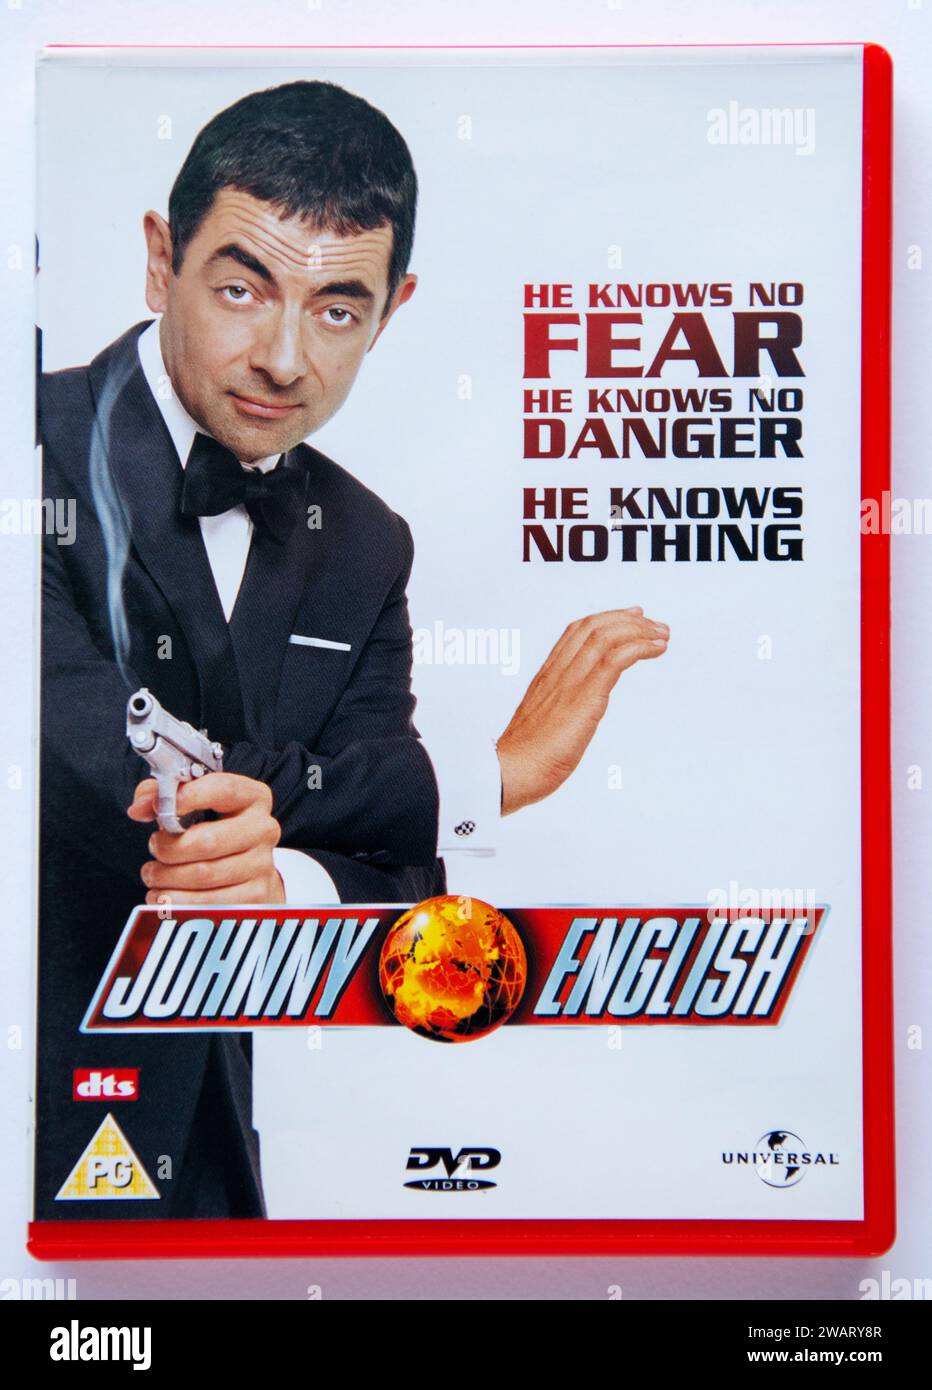 Copertina di una copia in DVD di Johnny English, un film comico di spionaggio, originariamente distribuito nei cinema nel 2003 Foto Stock